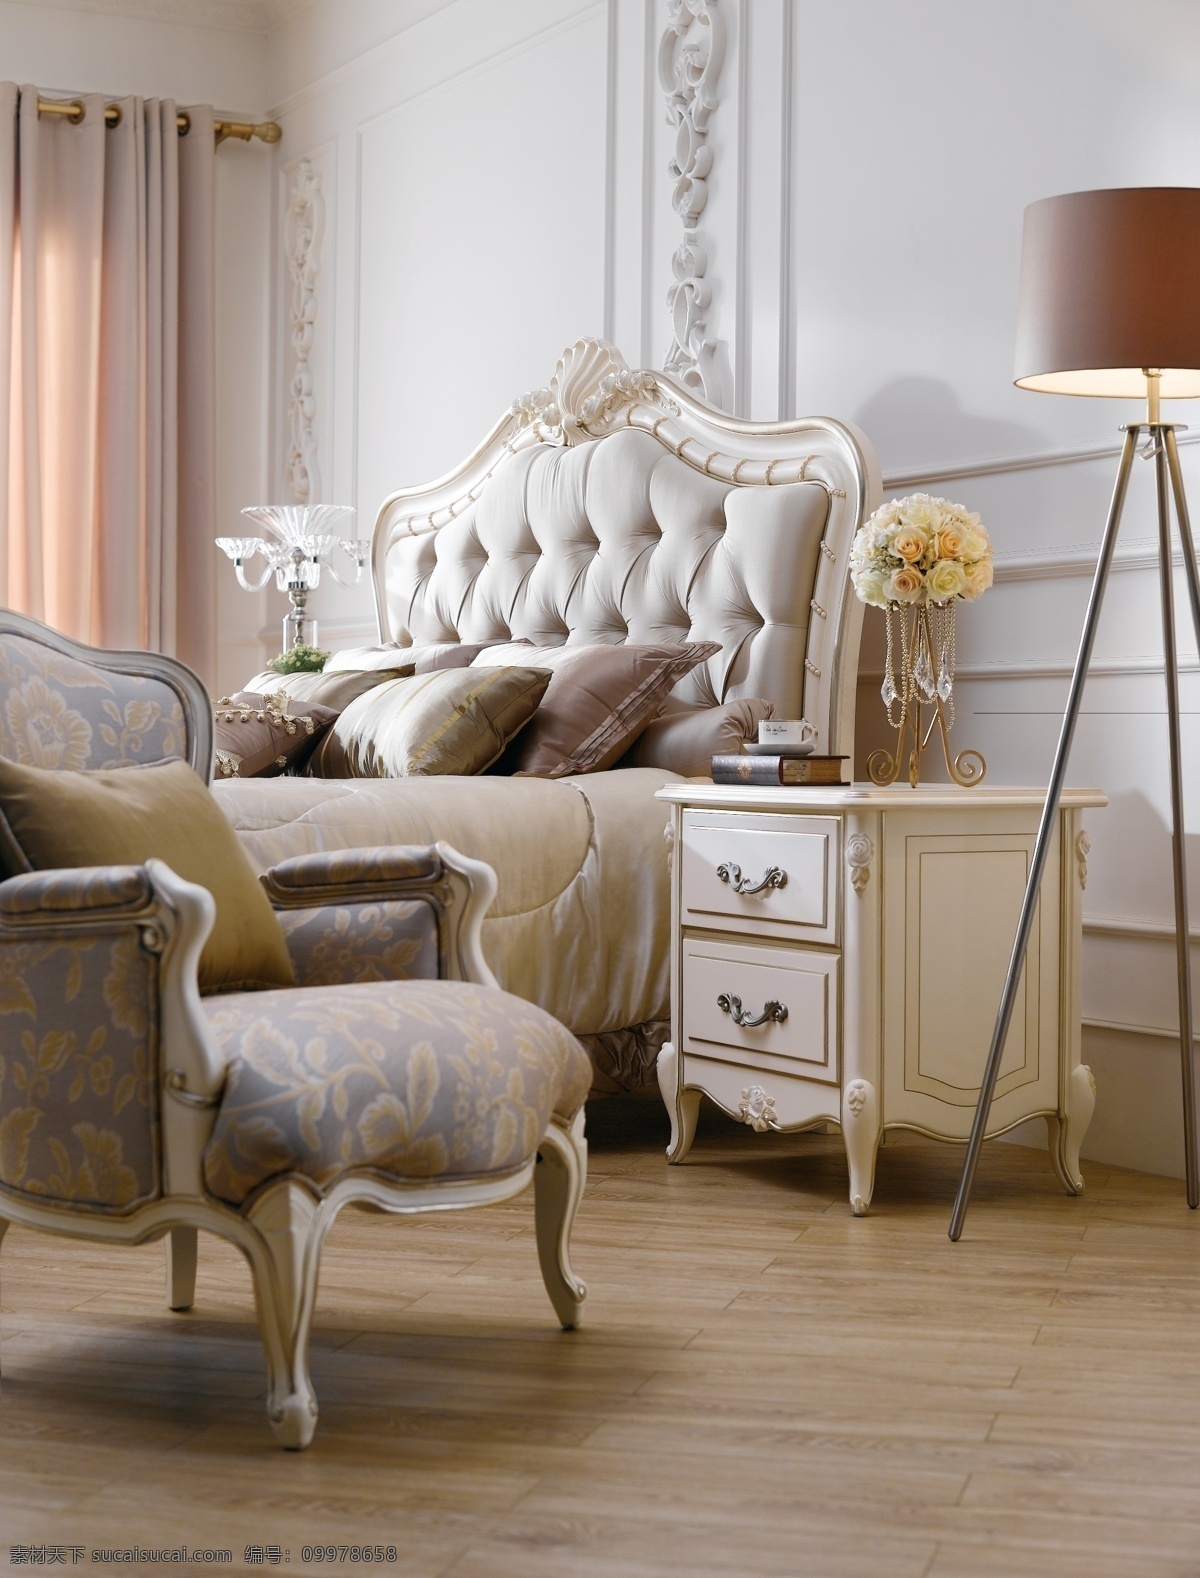 床上用品 古典家具 豪华家具 家居生活 落地灯 欧式风格 生活百科 法式 家具 法式家具 装饰品 欧式休闲沙发